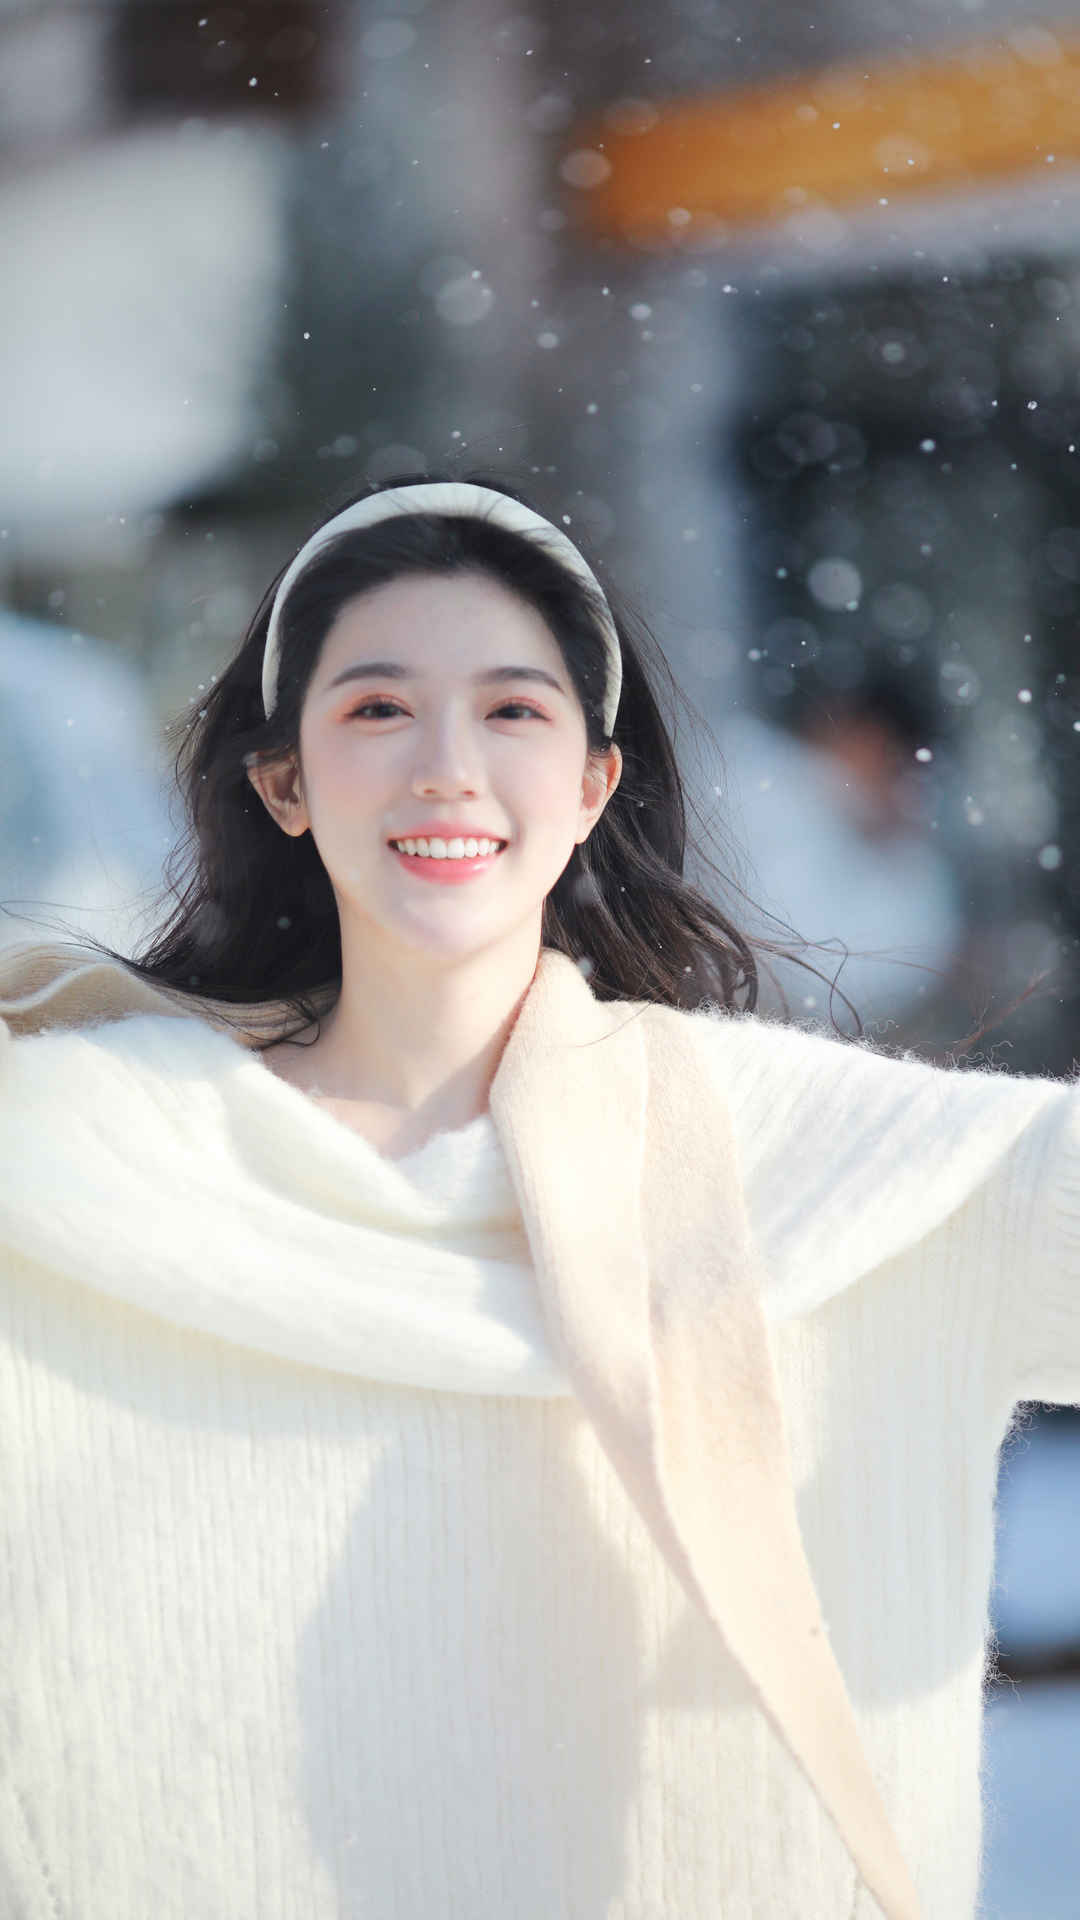 冬天 雪天 美女 围巾 白色毛衣 4k 图片-